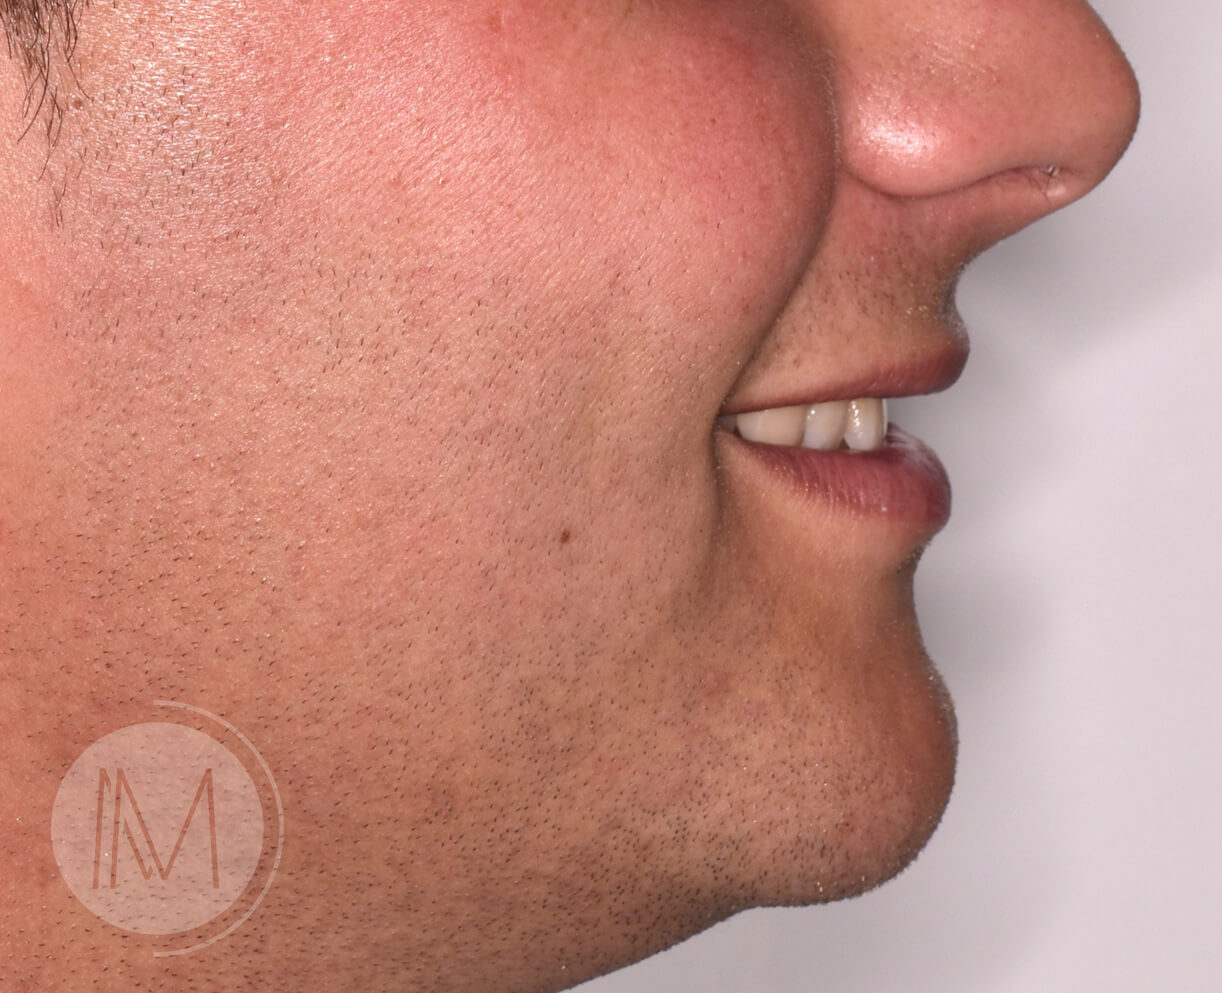 Ortodoncia + microimplante para corregir sonrisa inclinada 2